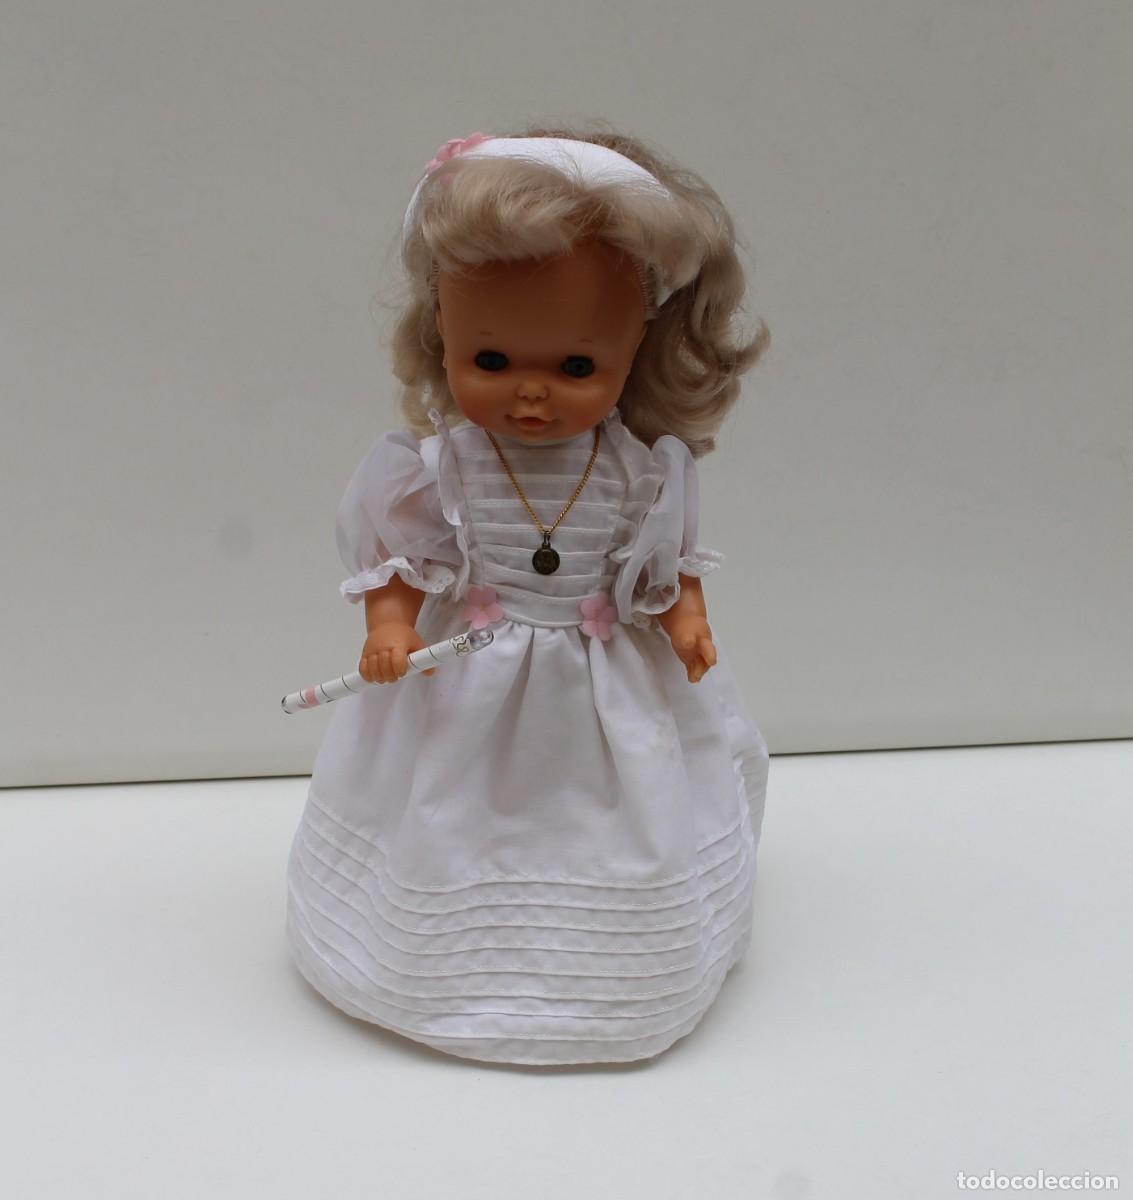 original muñeca de primera comunion de famosa a - Comprar Outras Bonecas da  Famosa no todocoleccion